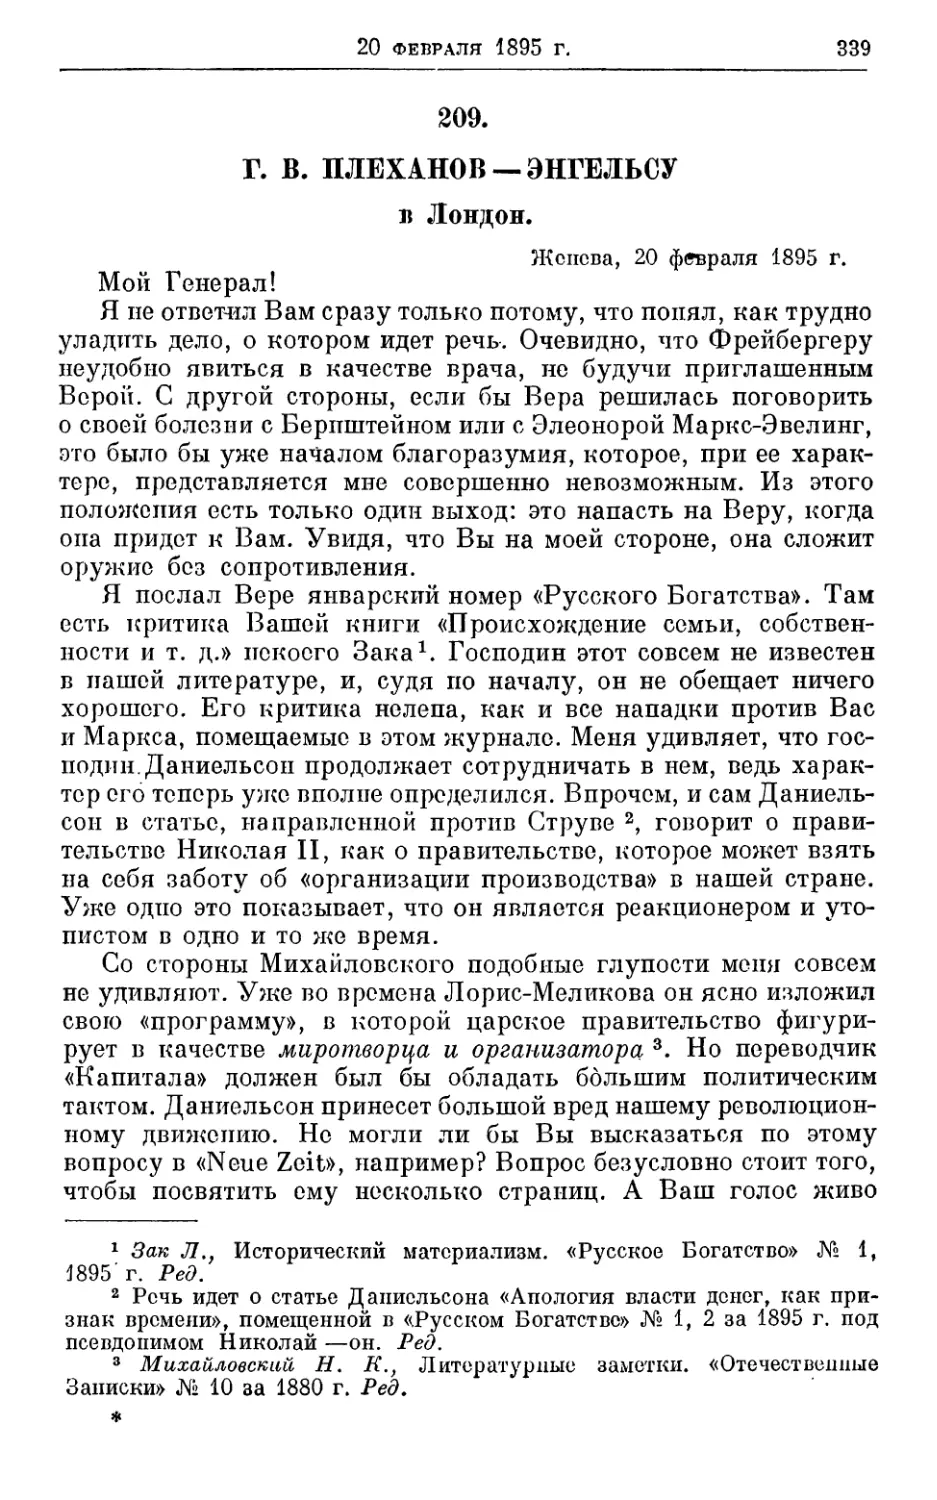 209. Плеханов — Энгельсу, 20 февраля 1895г